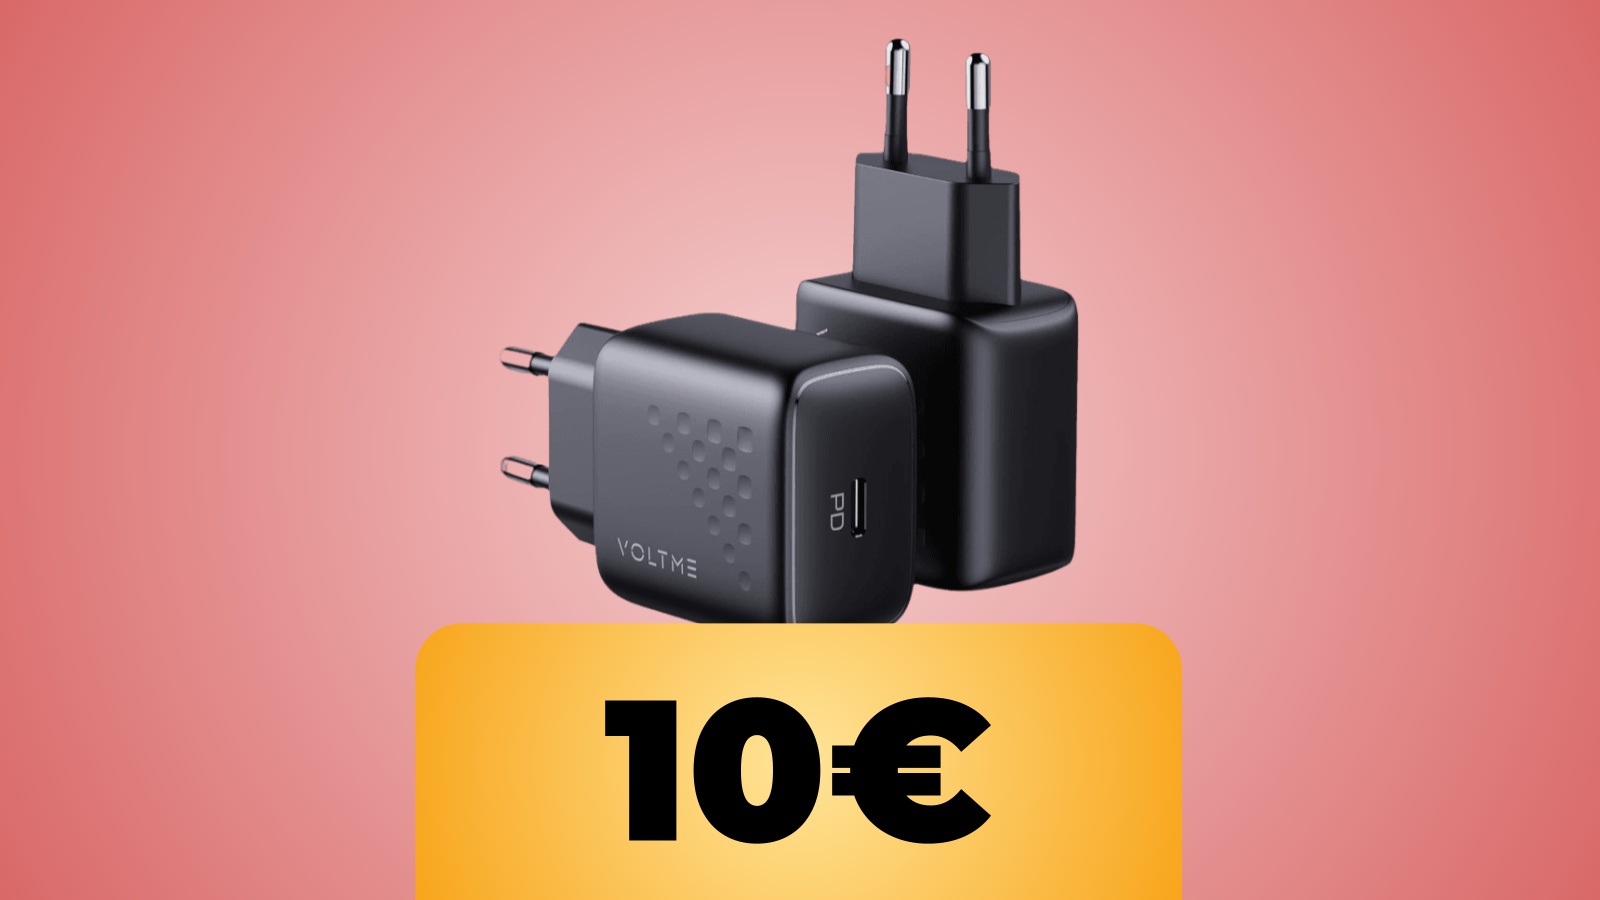 Due caricatori USB di VOLTME in doppio sconto con il coupon su Amazon Italia